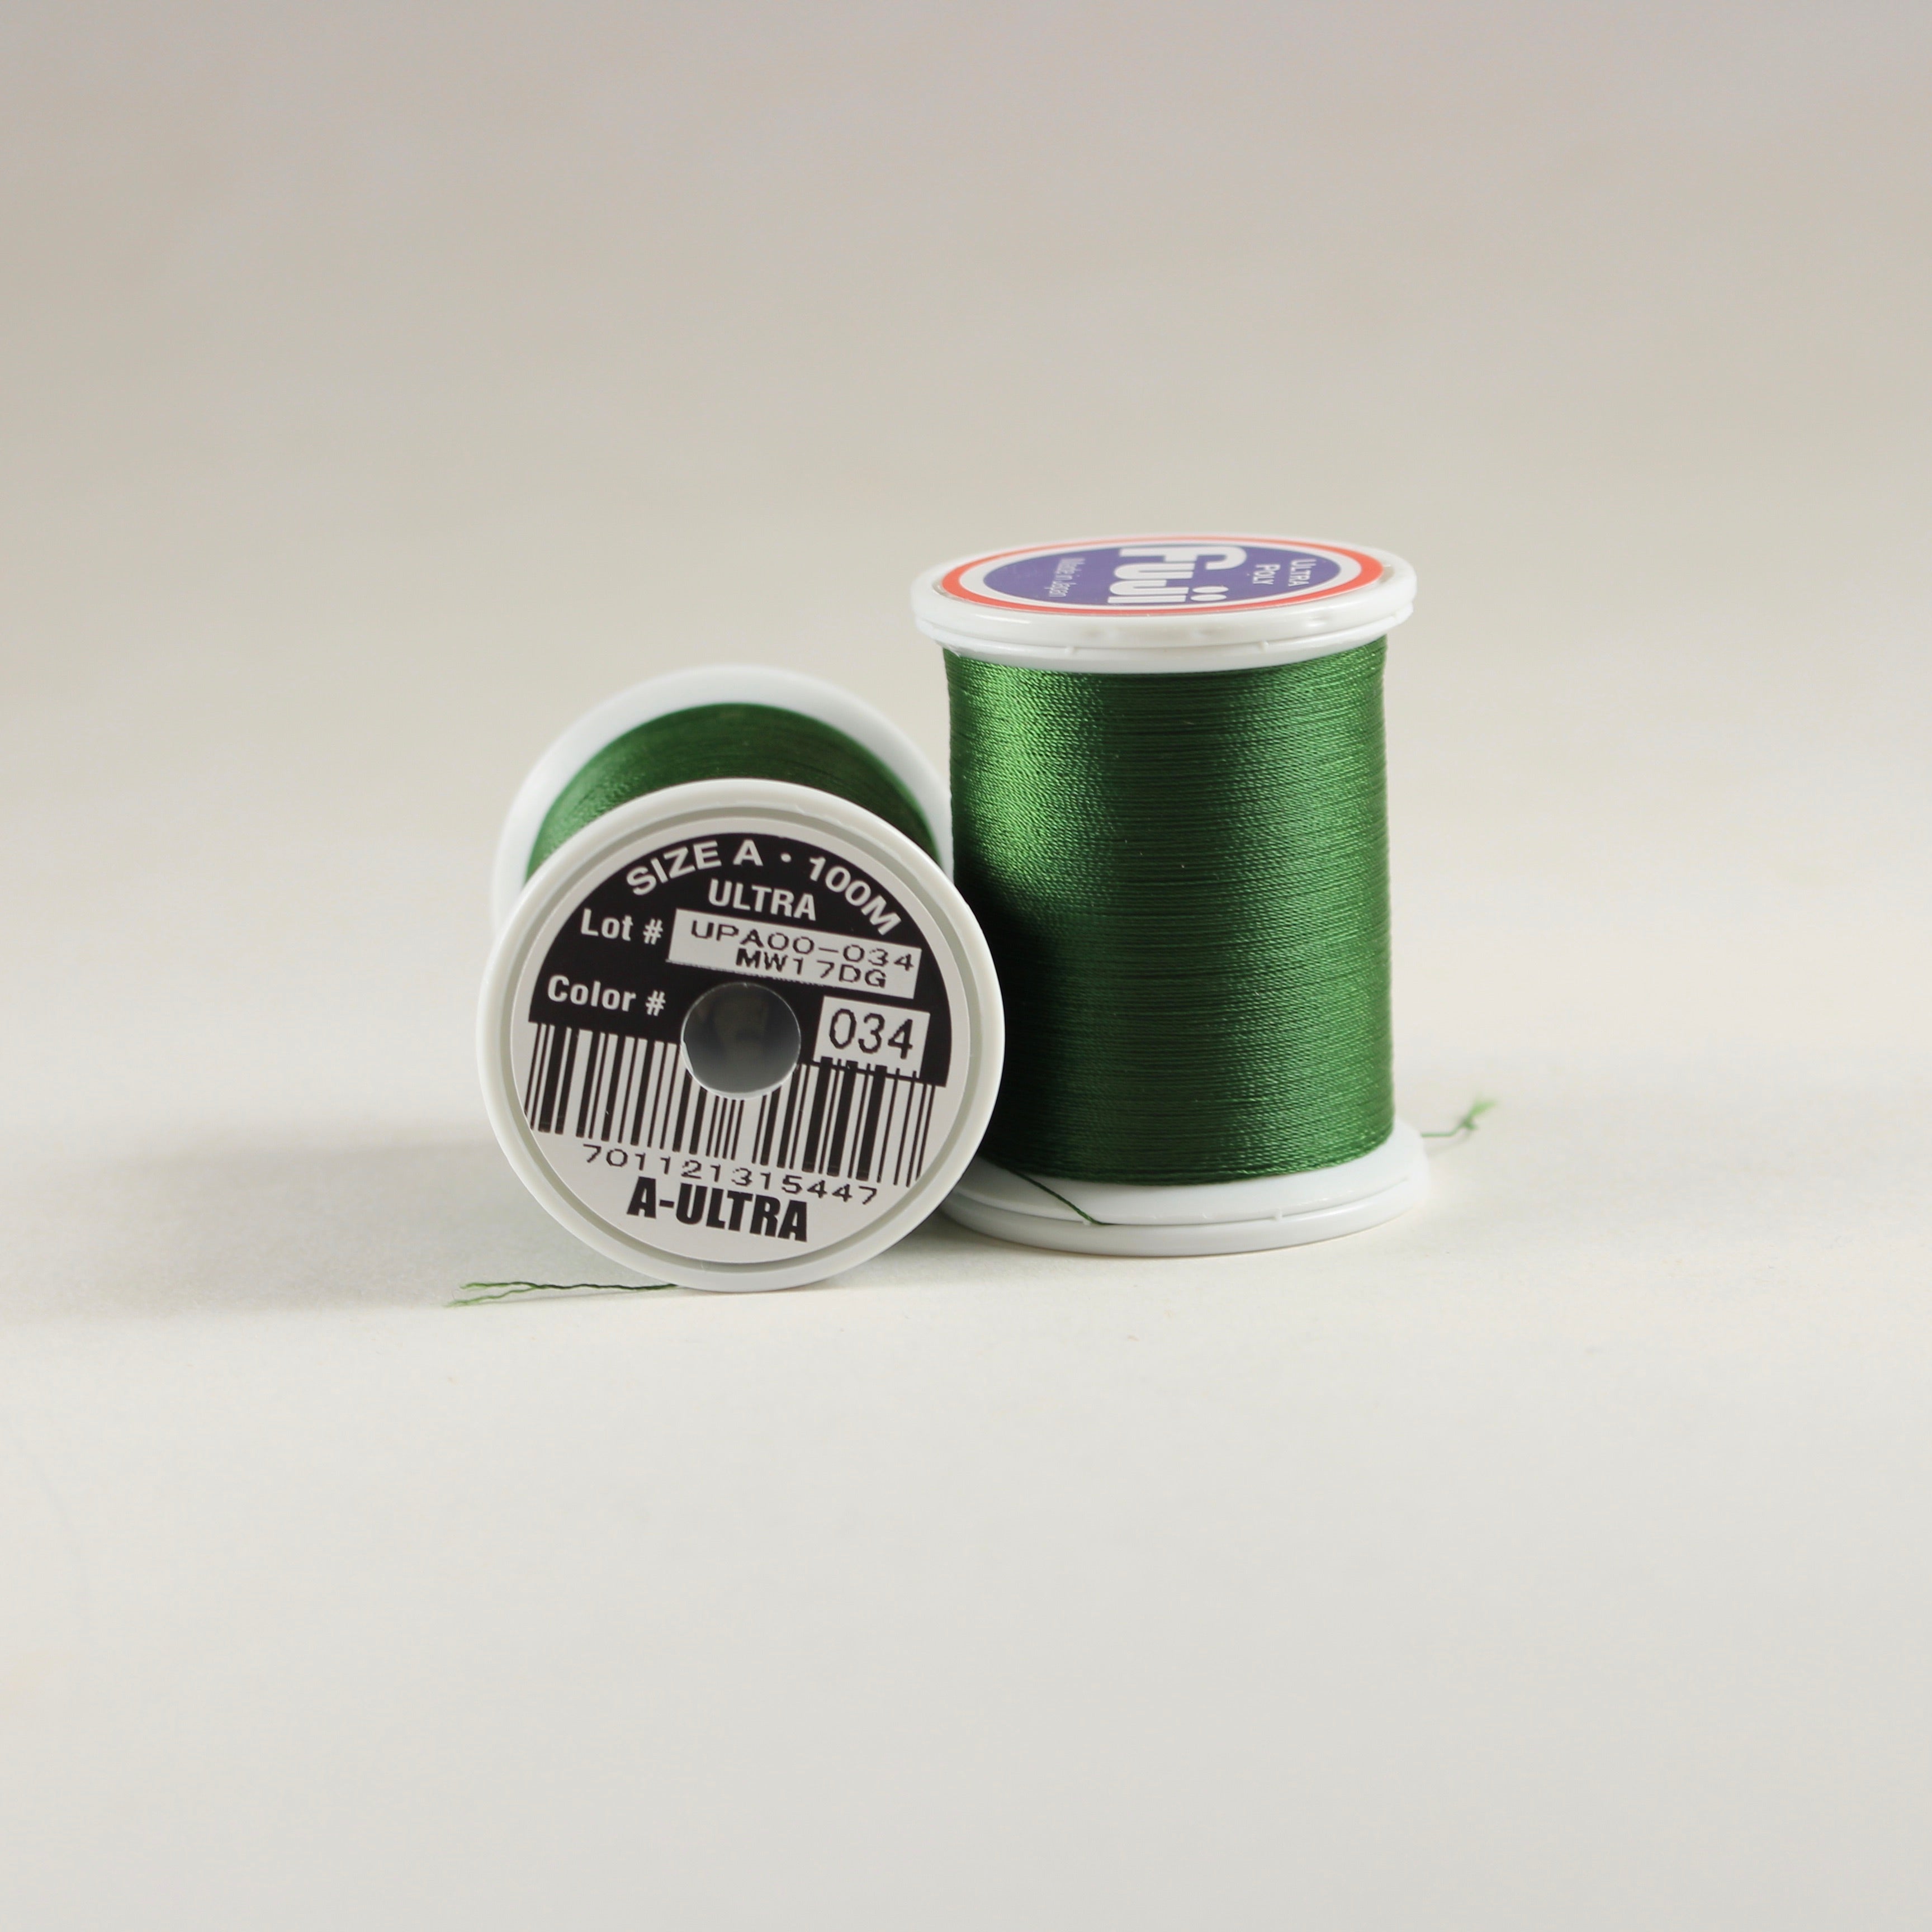 Fuji Metallic Thread - Lime Green